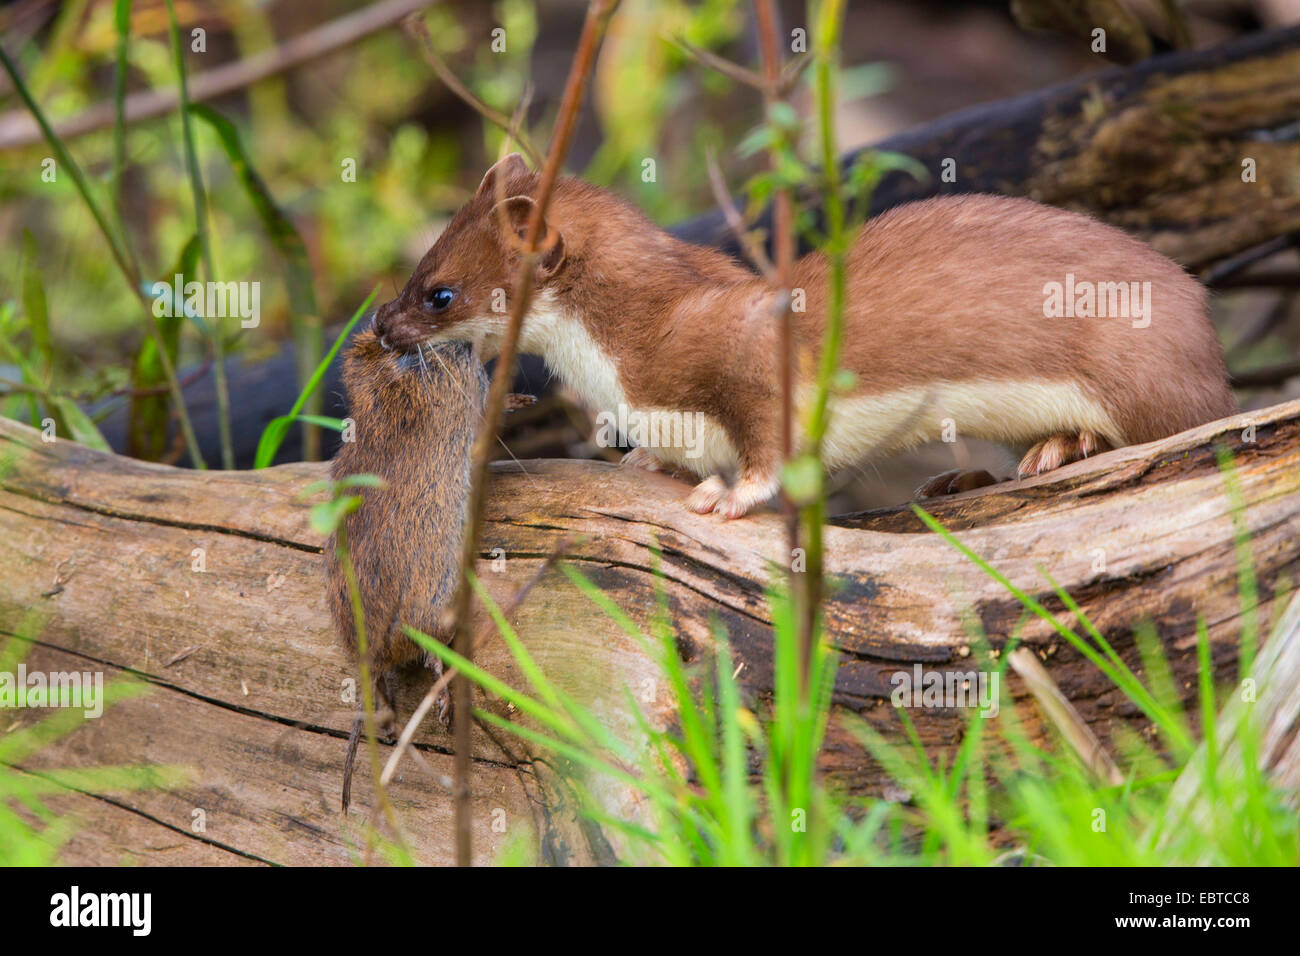 L'hermine, Hermine, belette à queue courte (Mustela erminea), dans la région de sommer la fourrure avec la souris capturées, Germany Banque D'Images